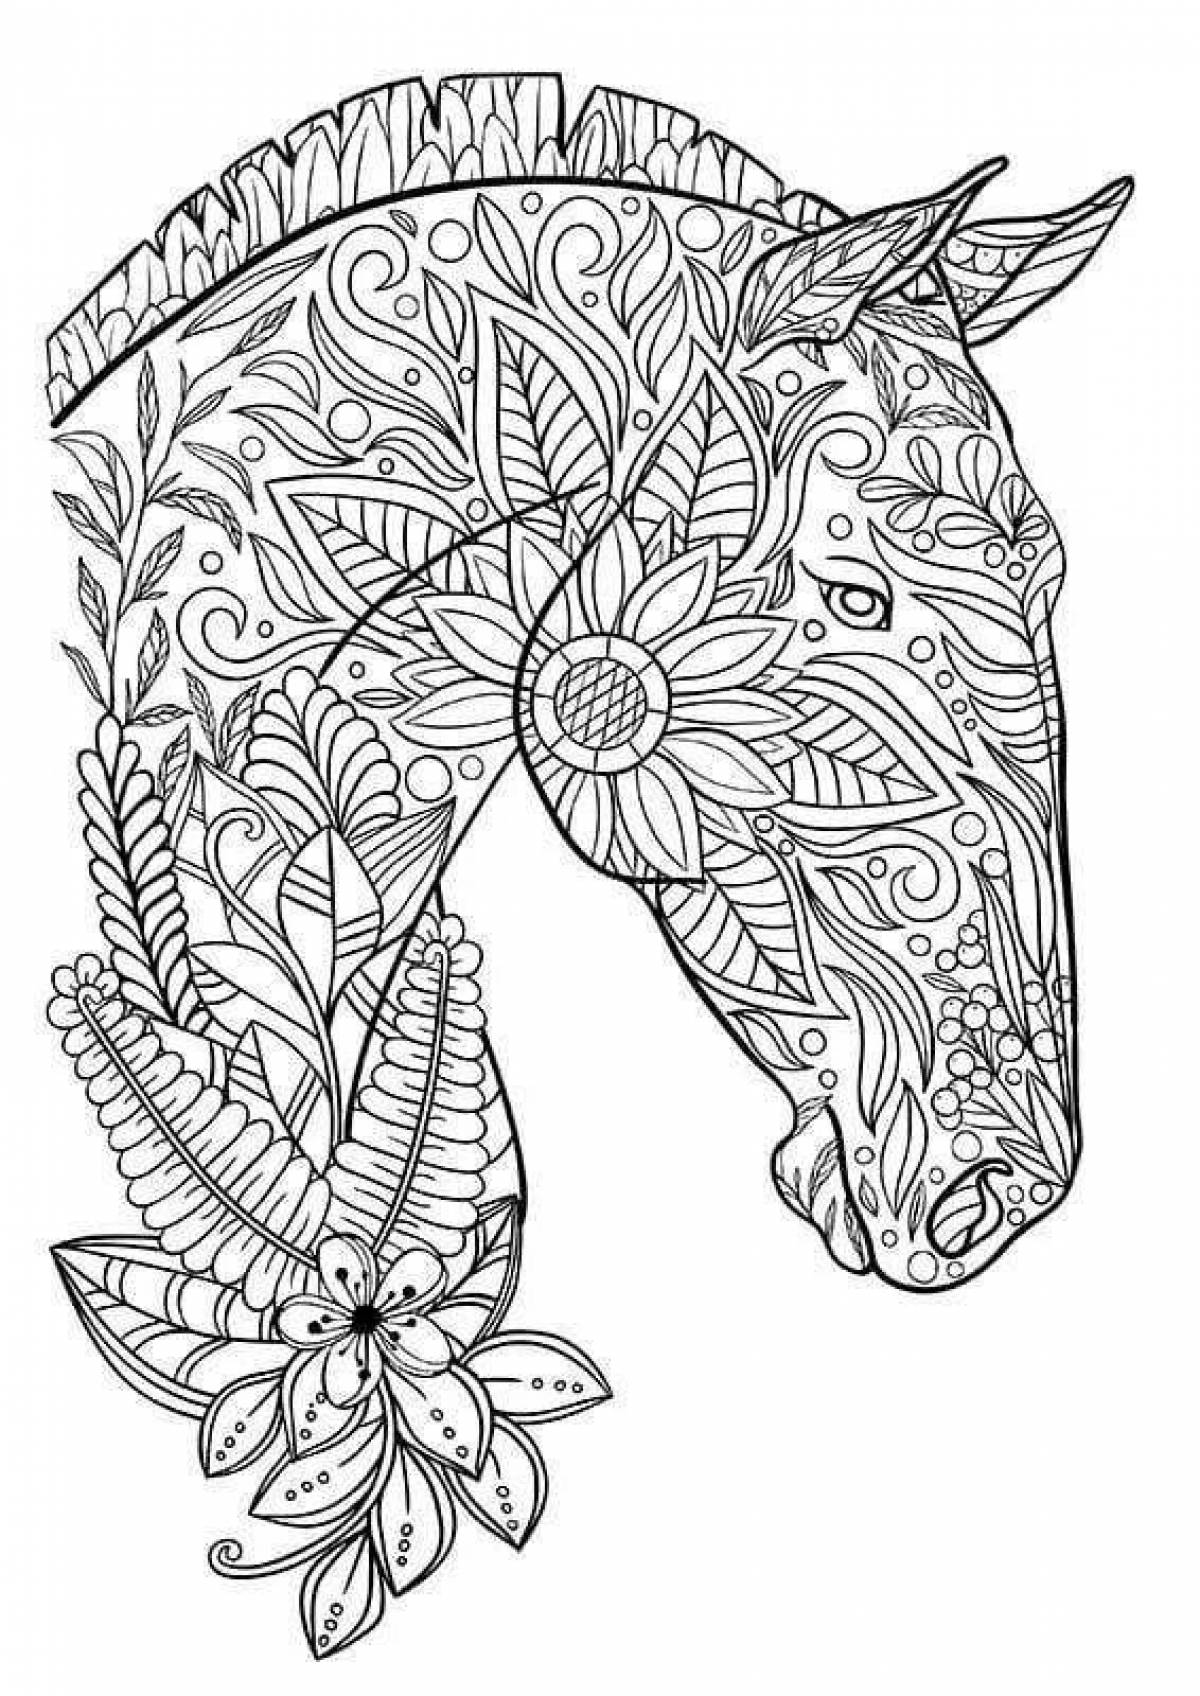 Elegant animal mandala coloring page